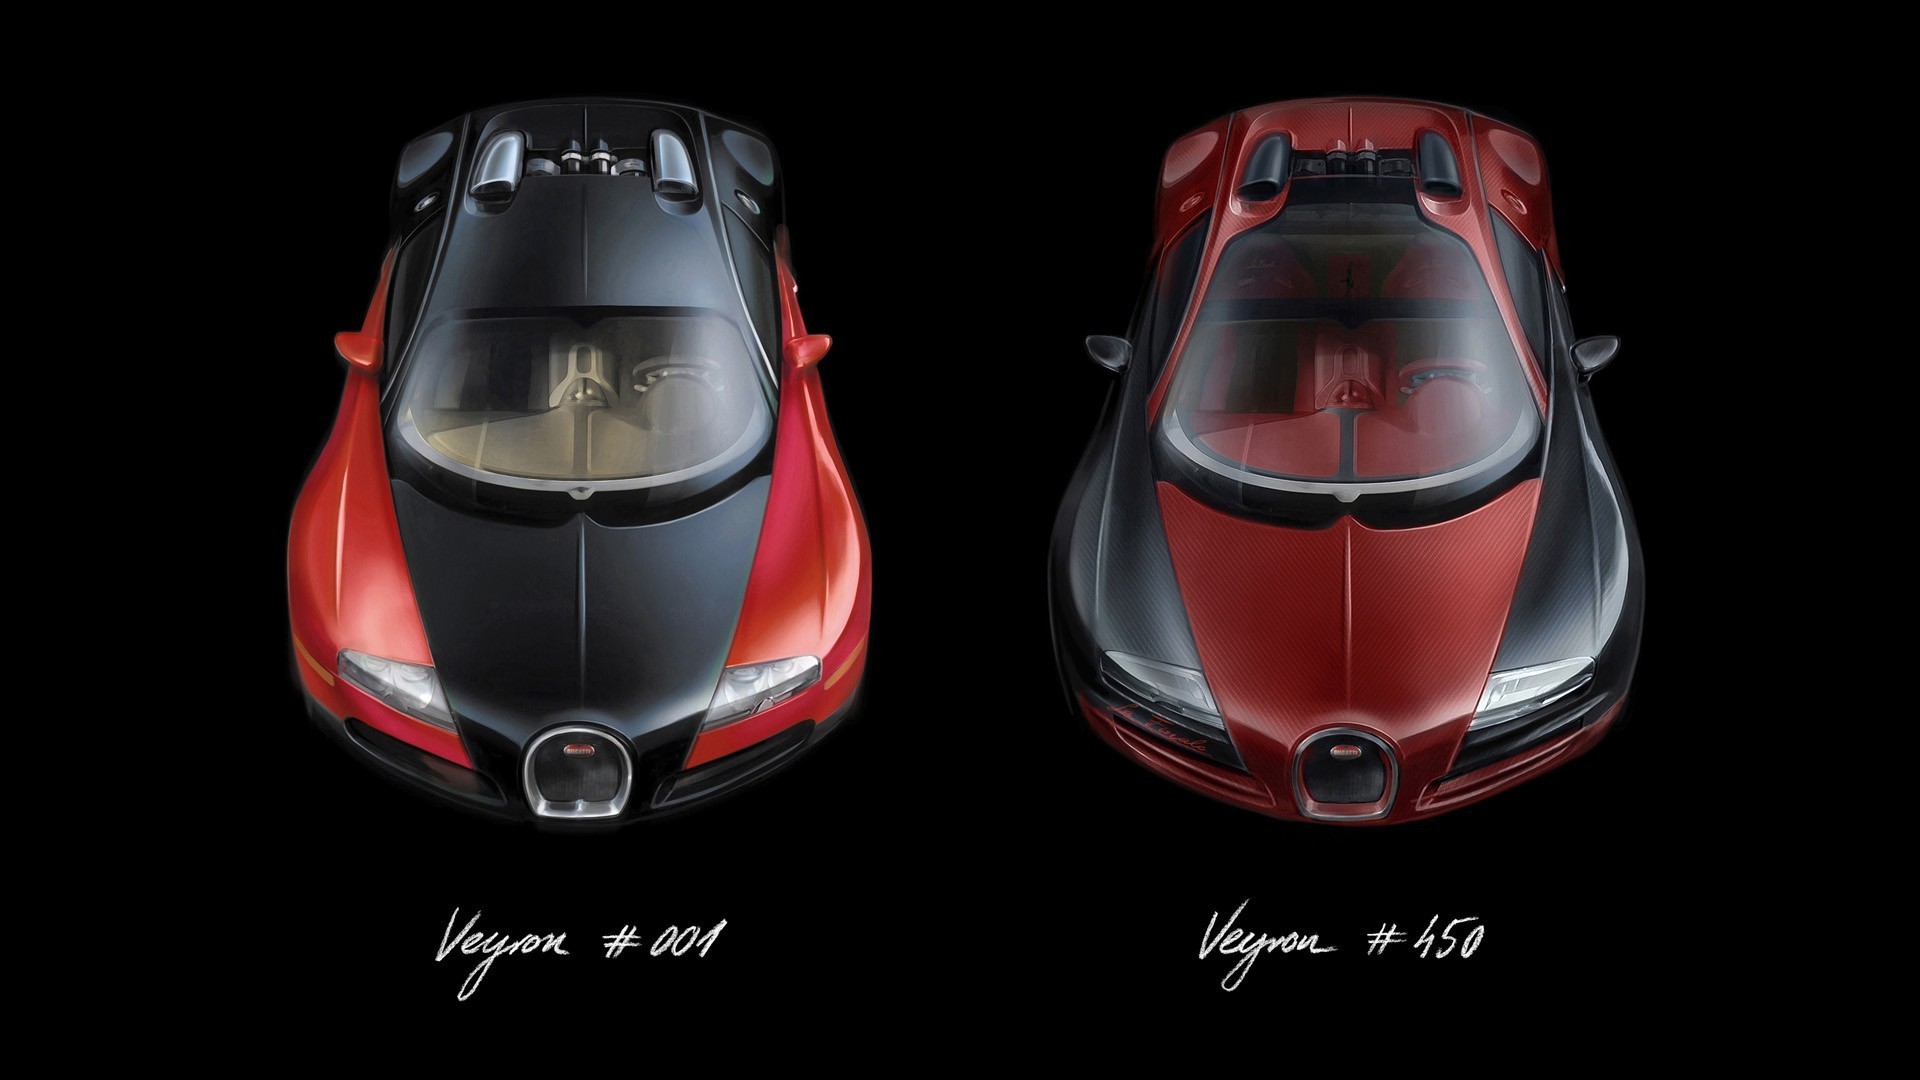 017_Veyron-001-450_Design_Sketch_front